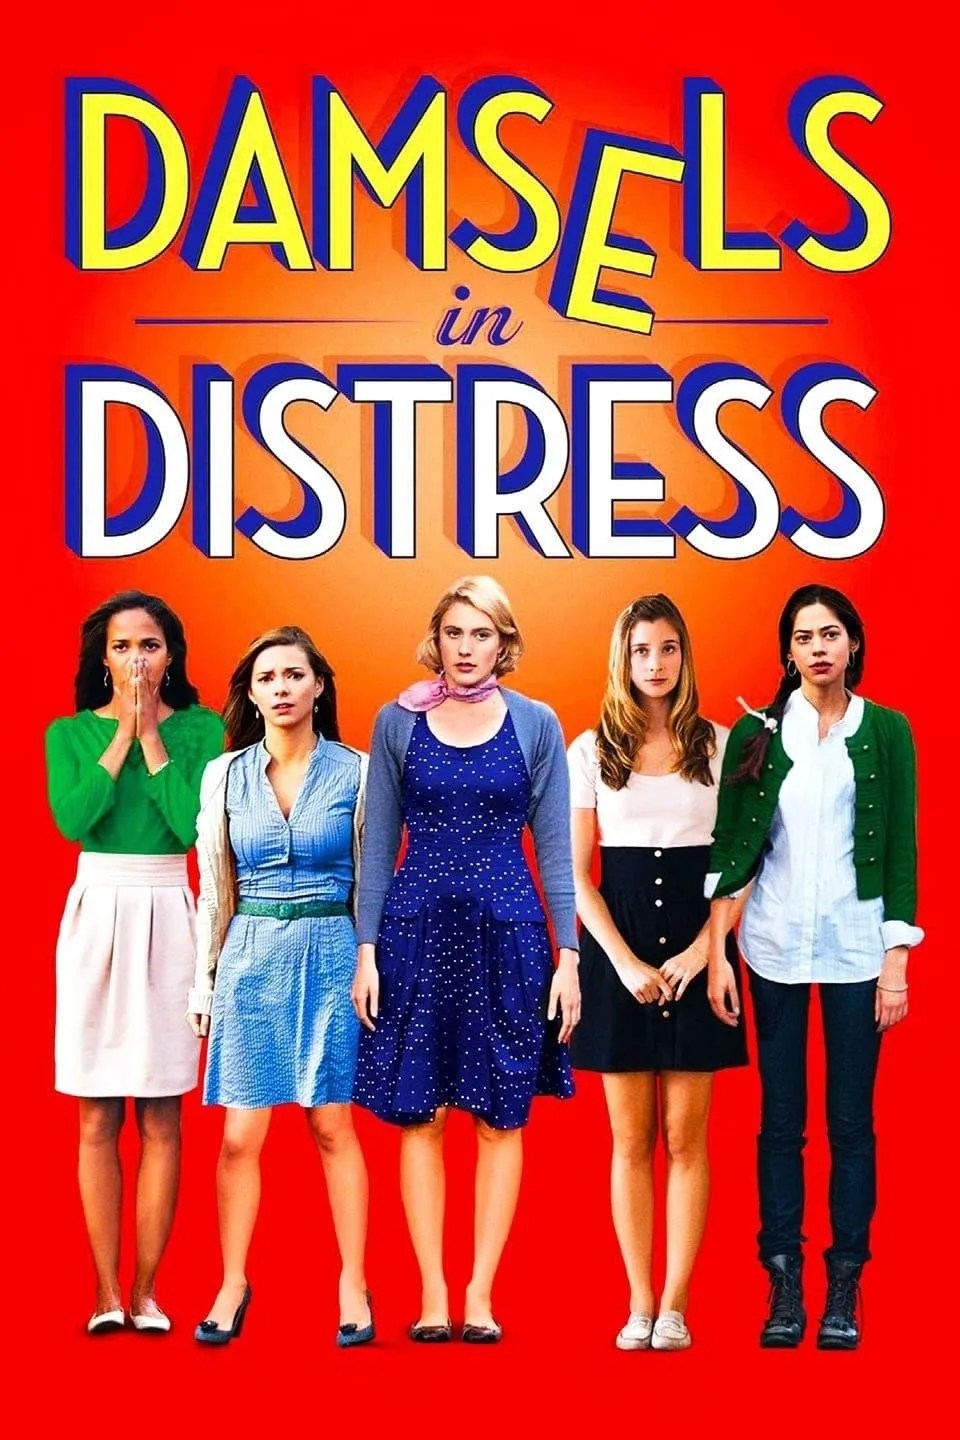 Damsels in Distress (2012) MovieWeb